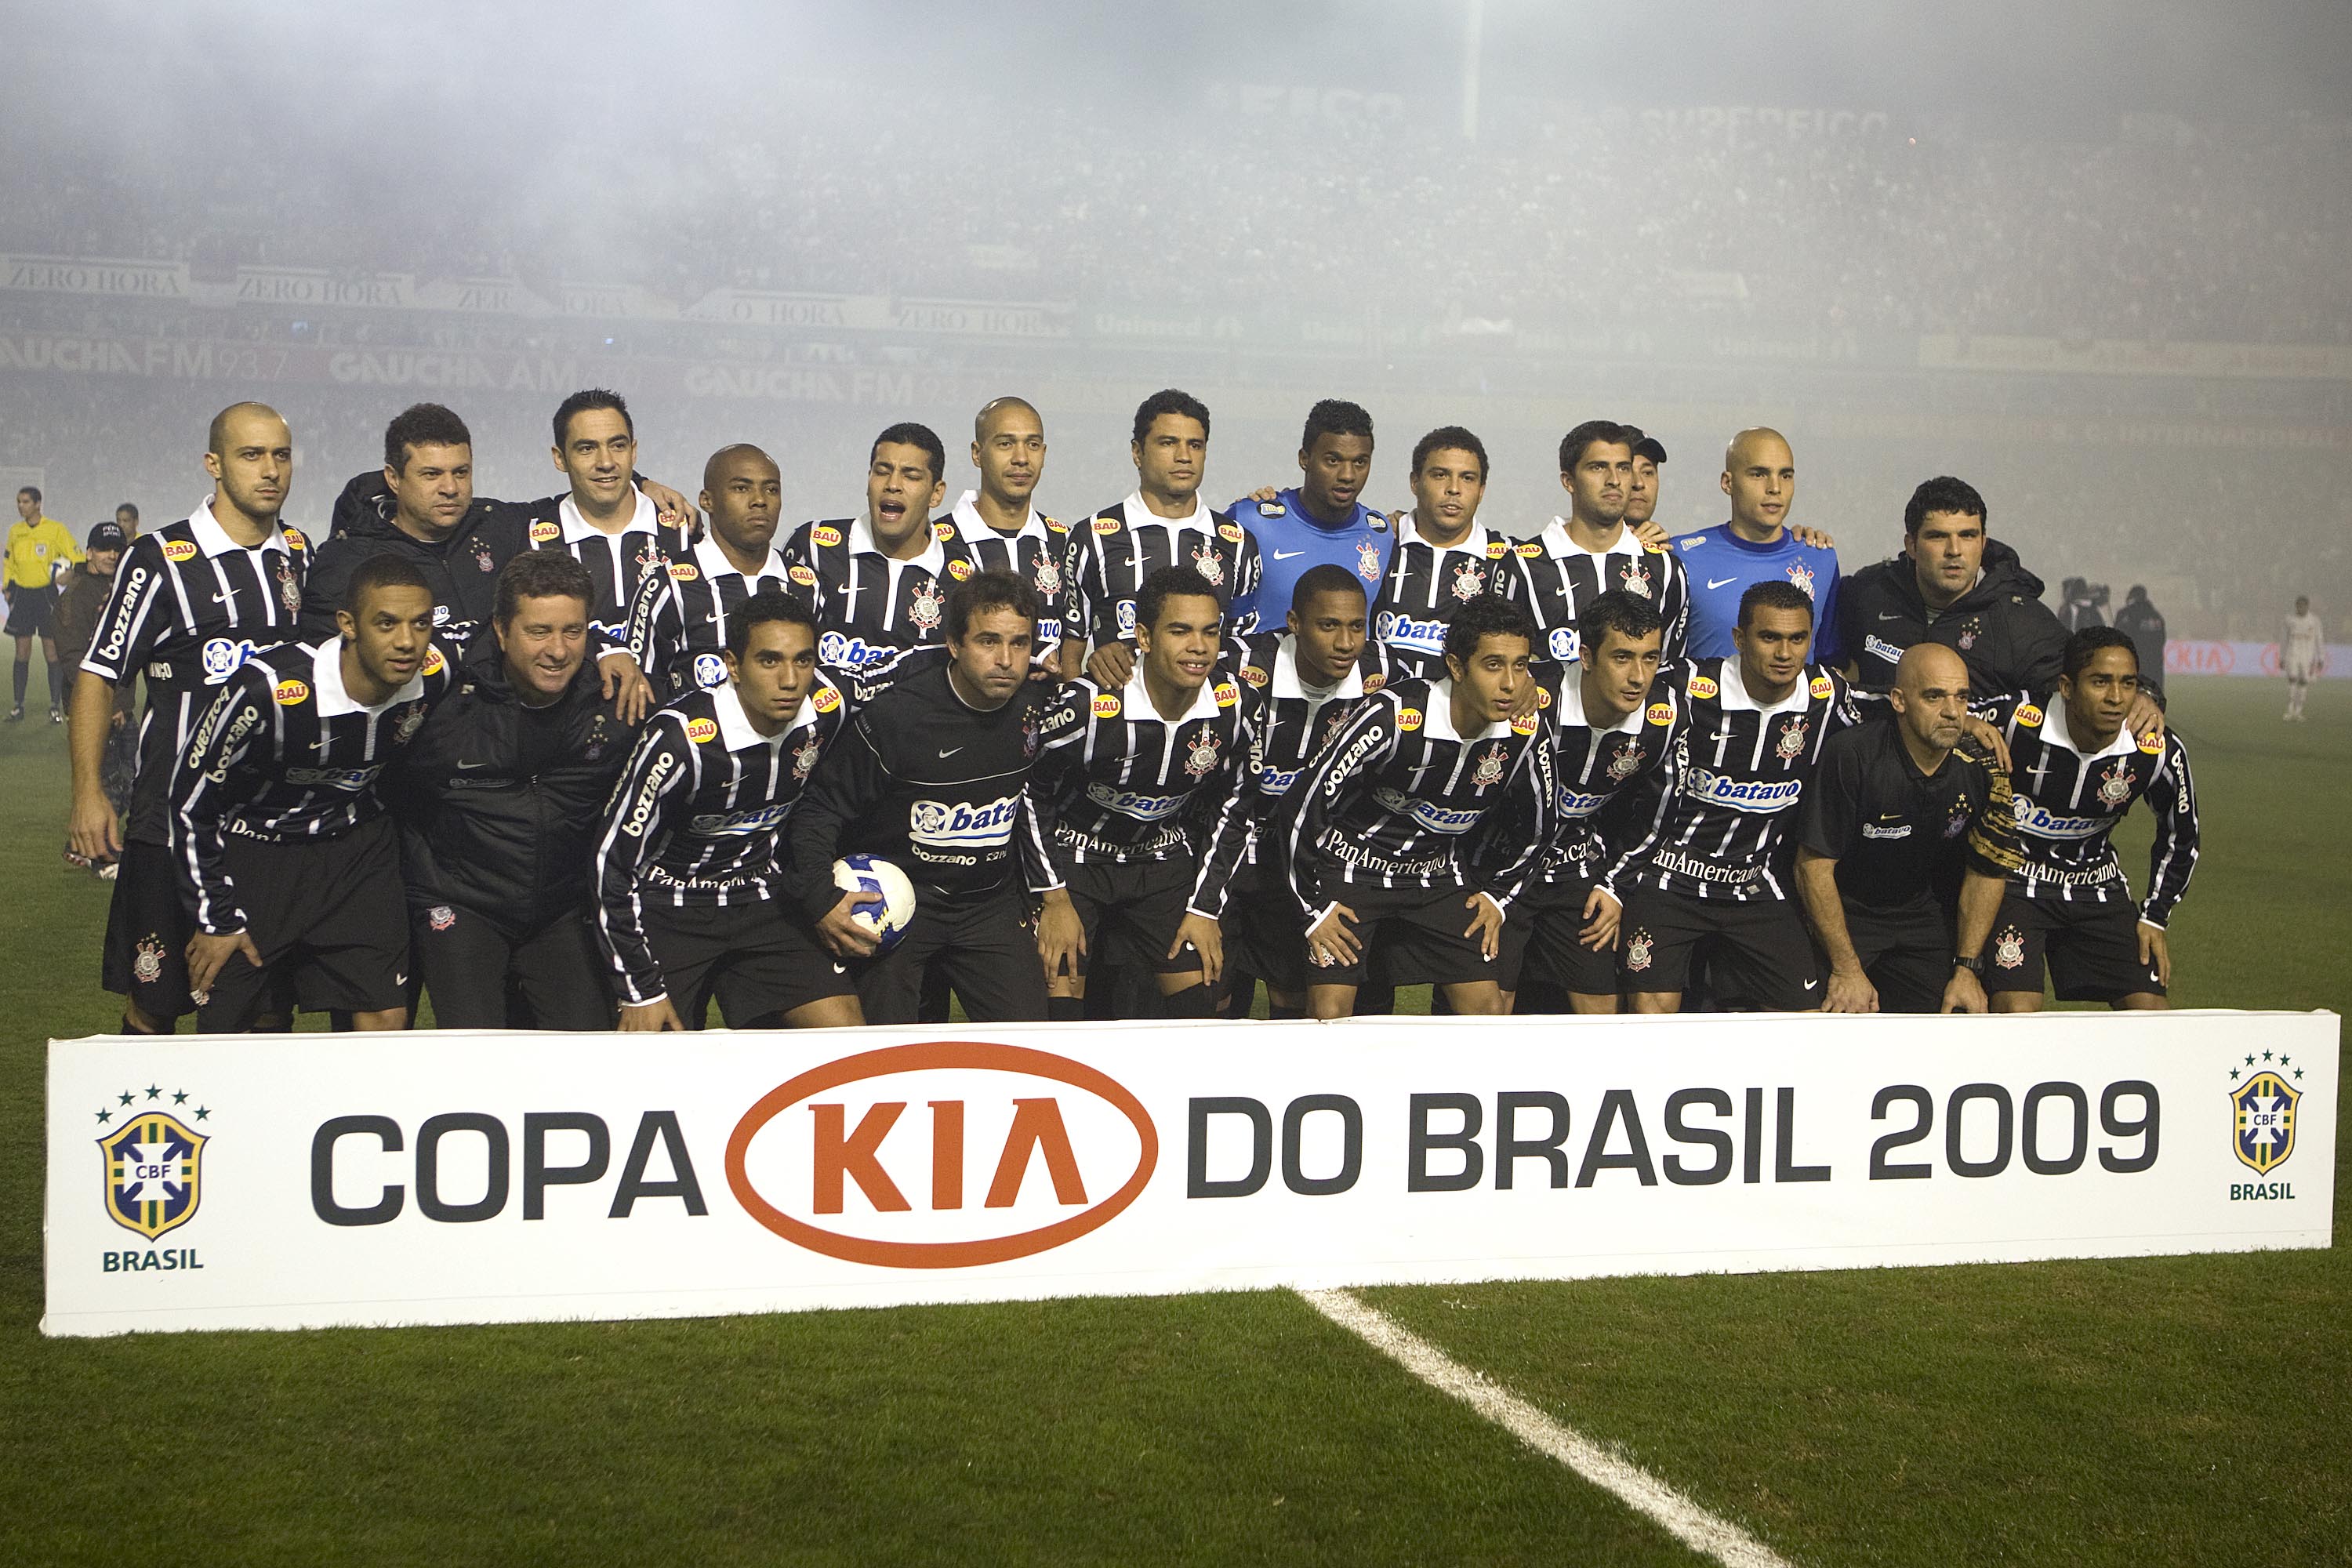 TODAS AS FINAIS DA COPA DO BRASIL (2012-2022) 